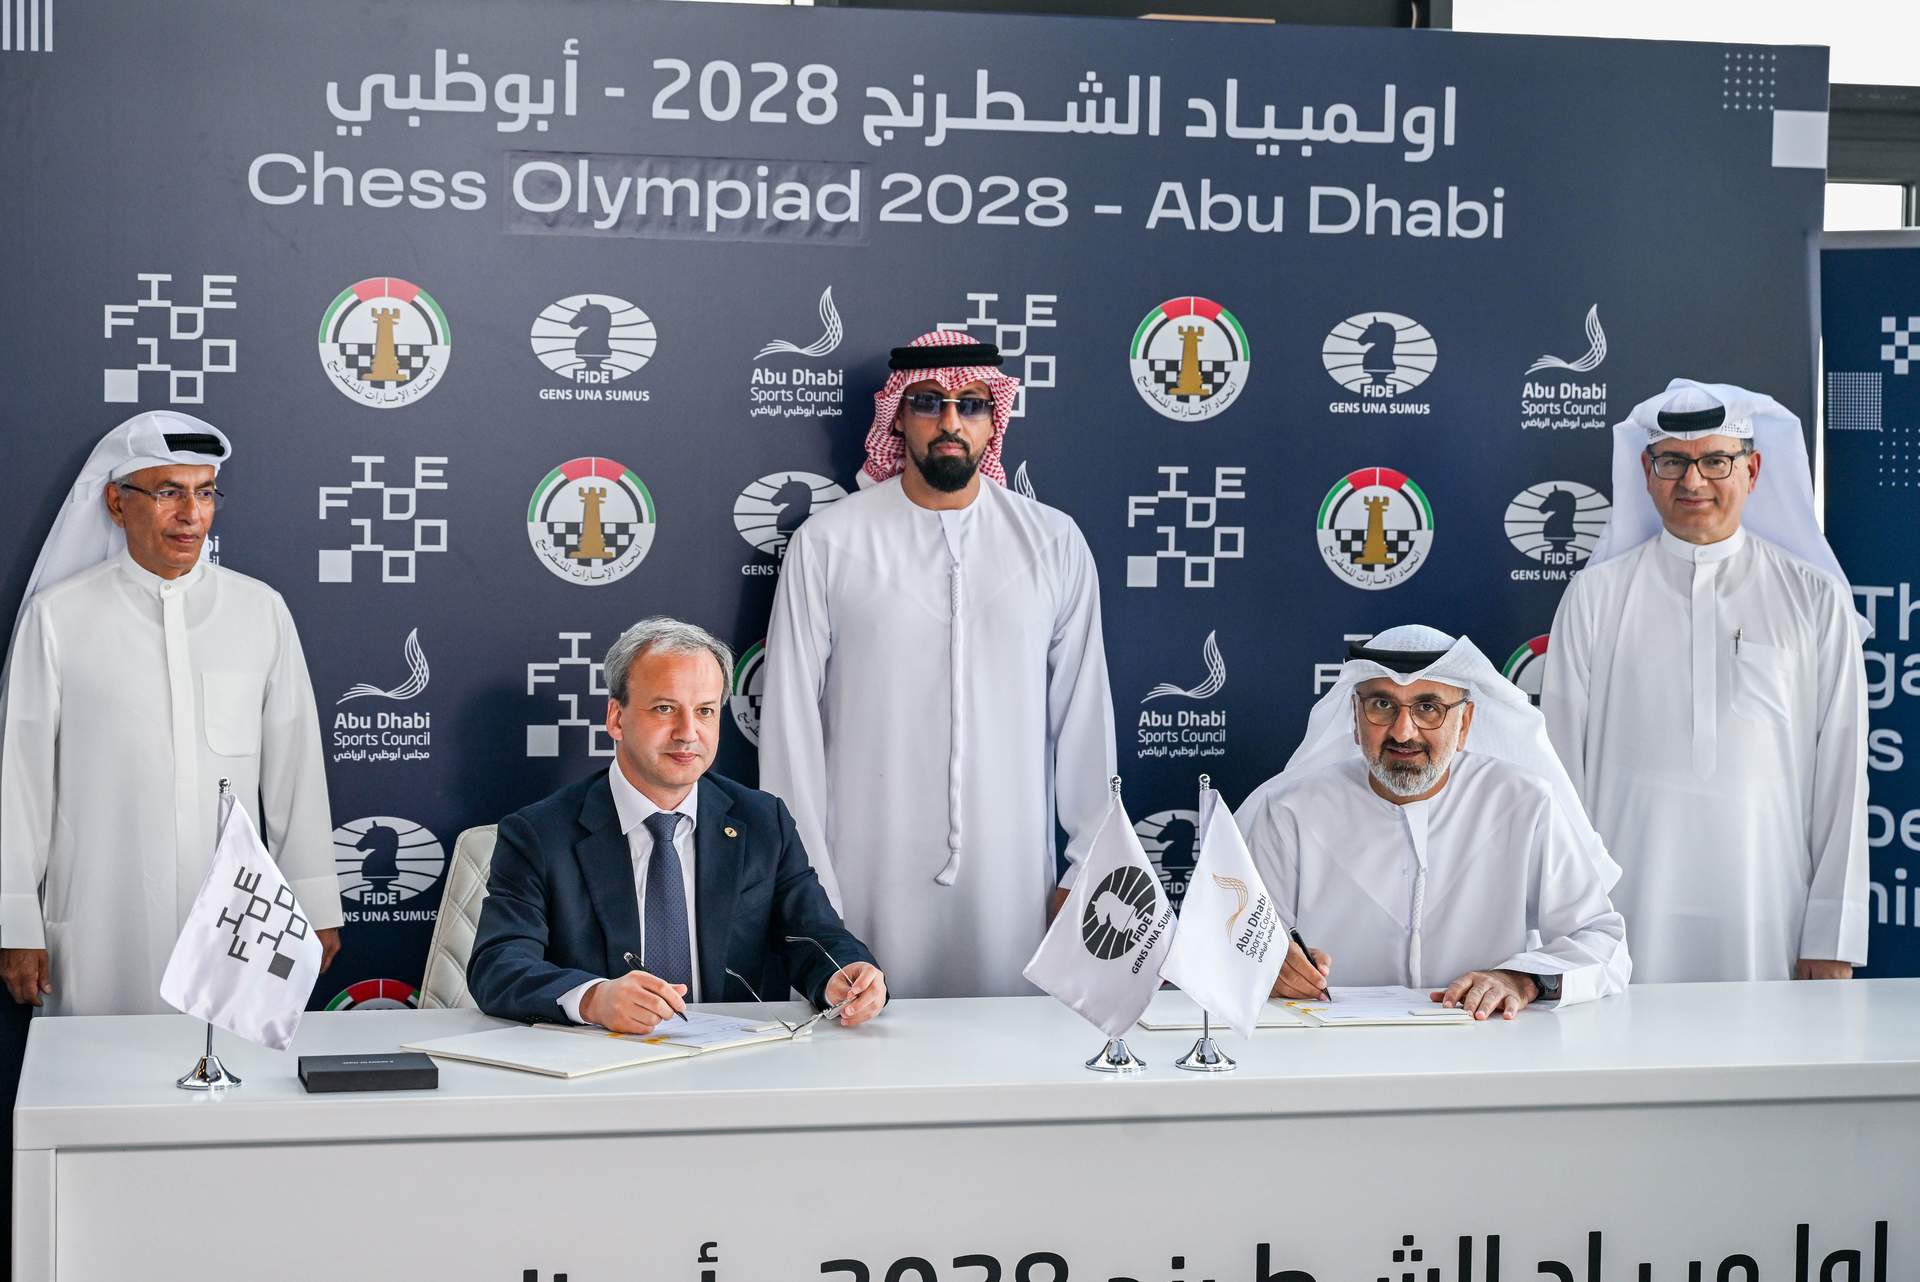 阿布扎比将举办 2028 年国际象棋奥林匹克运动会